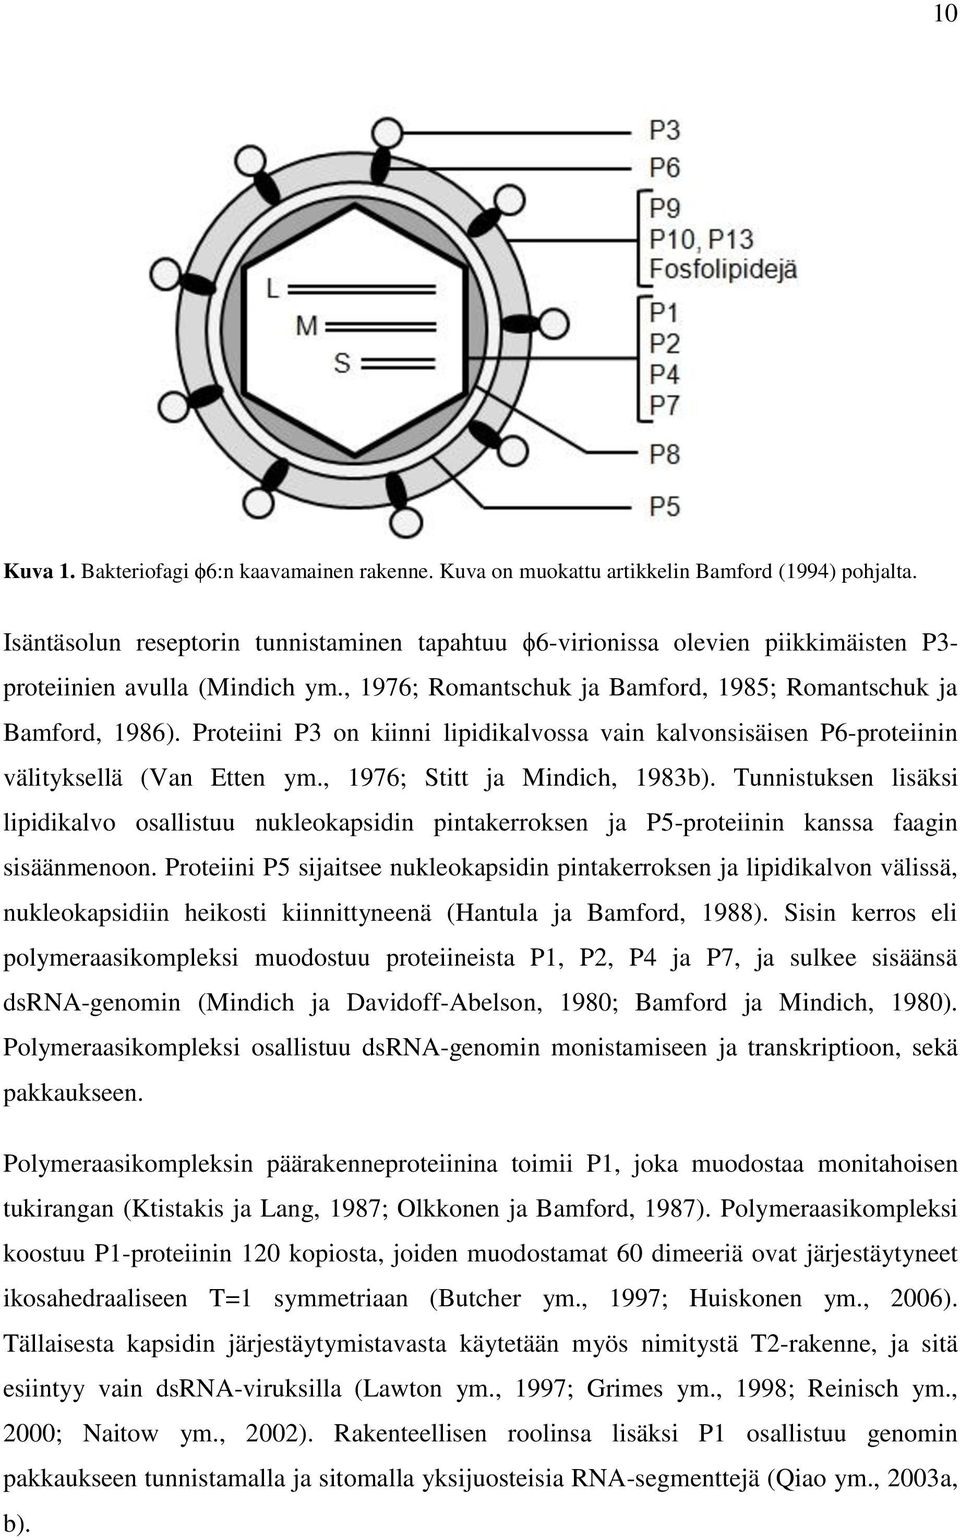 Proteiini P3 on kiinni lipidikalvossa vain kalvonsisäisen P6-proteiinin välityksellä (Van Etten ym., 1976; Stitt ja Mindich, 1983b).